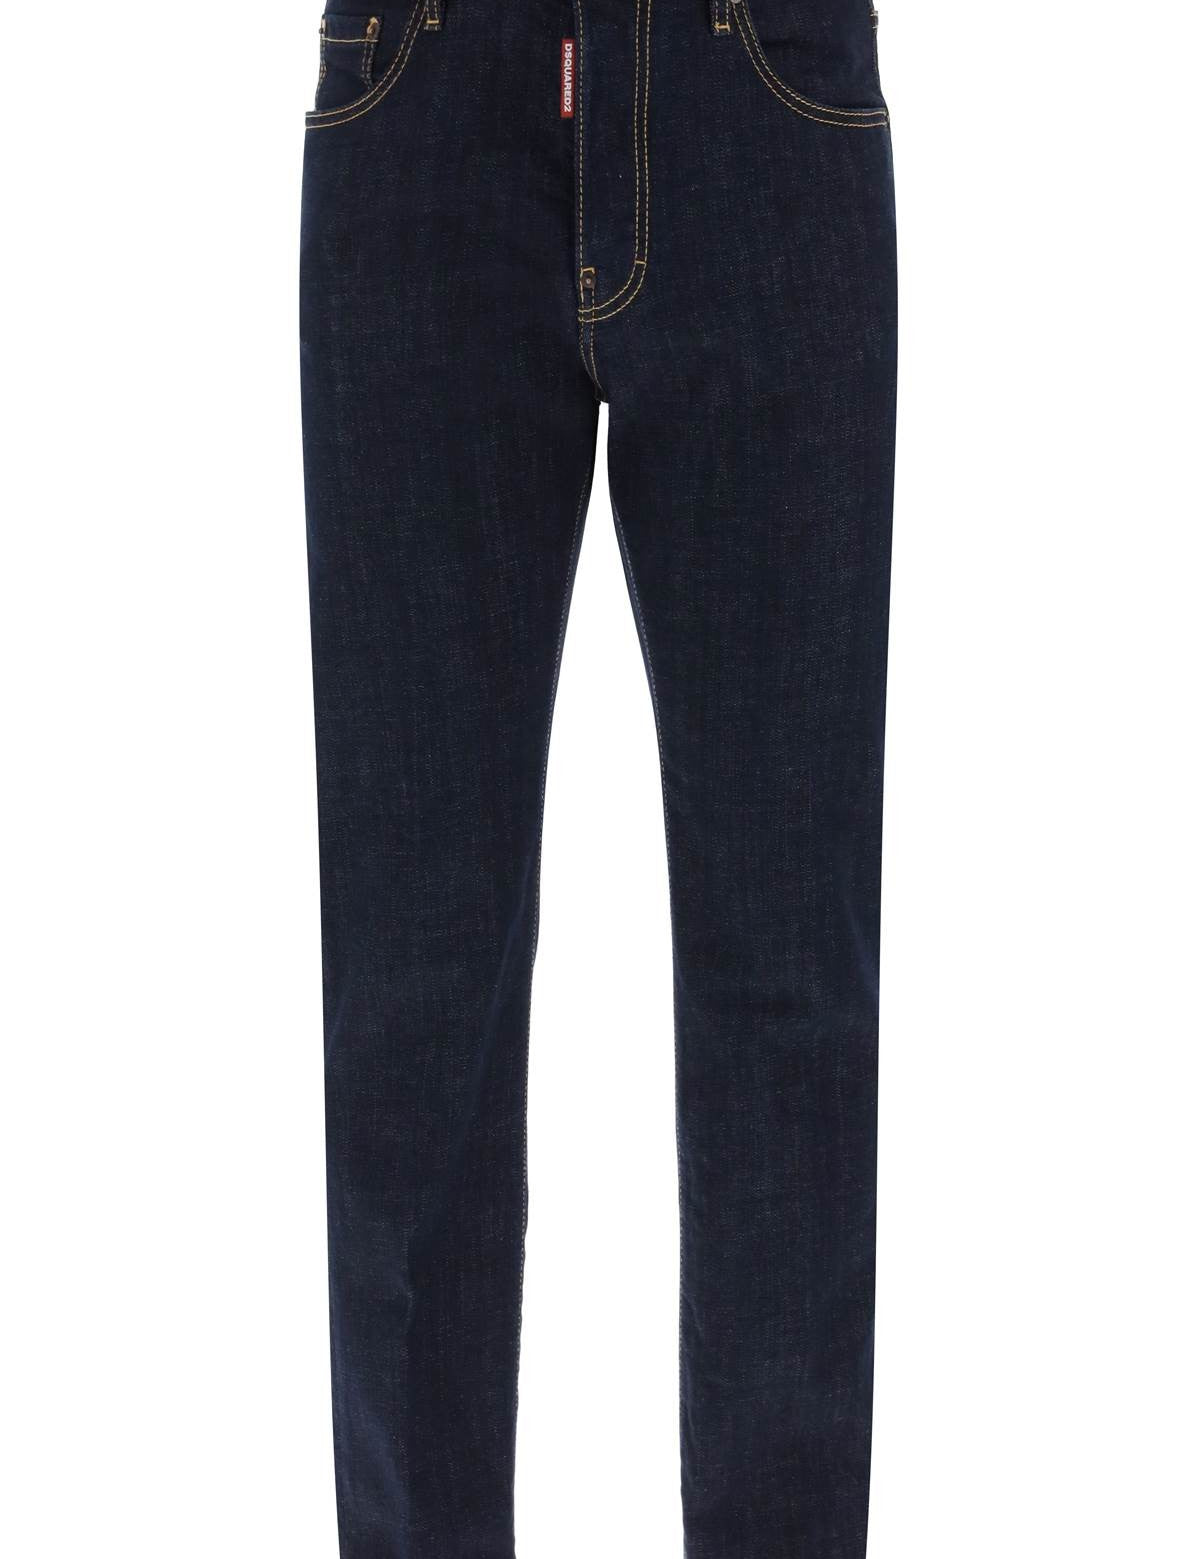 dsquared2-642-jeans-in-dark-rinse-wash.jpg